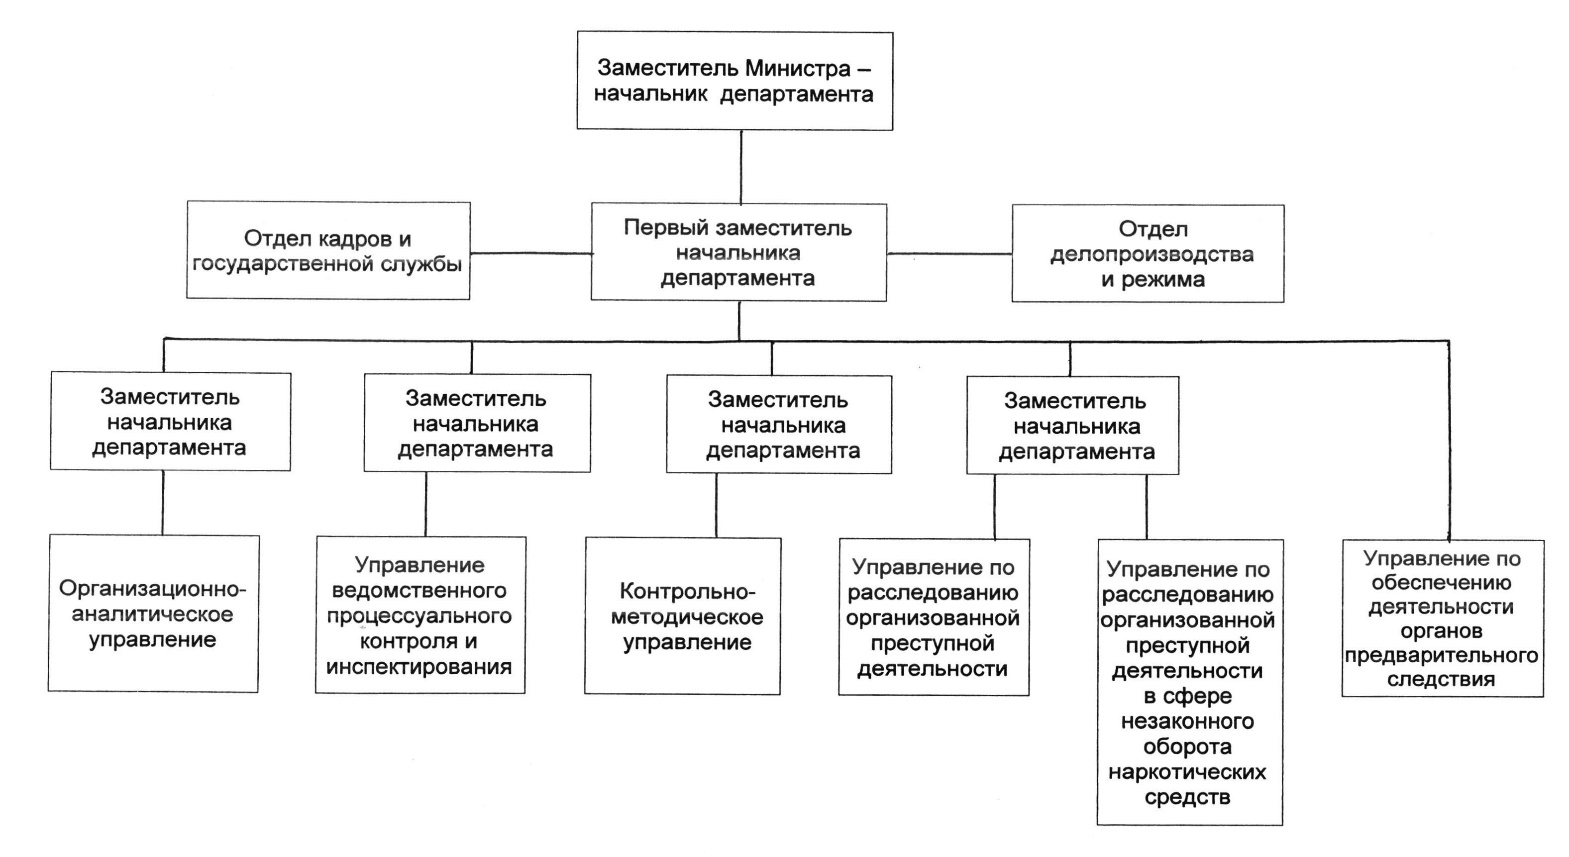 Структура Министерства внутренних дел РФ схема